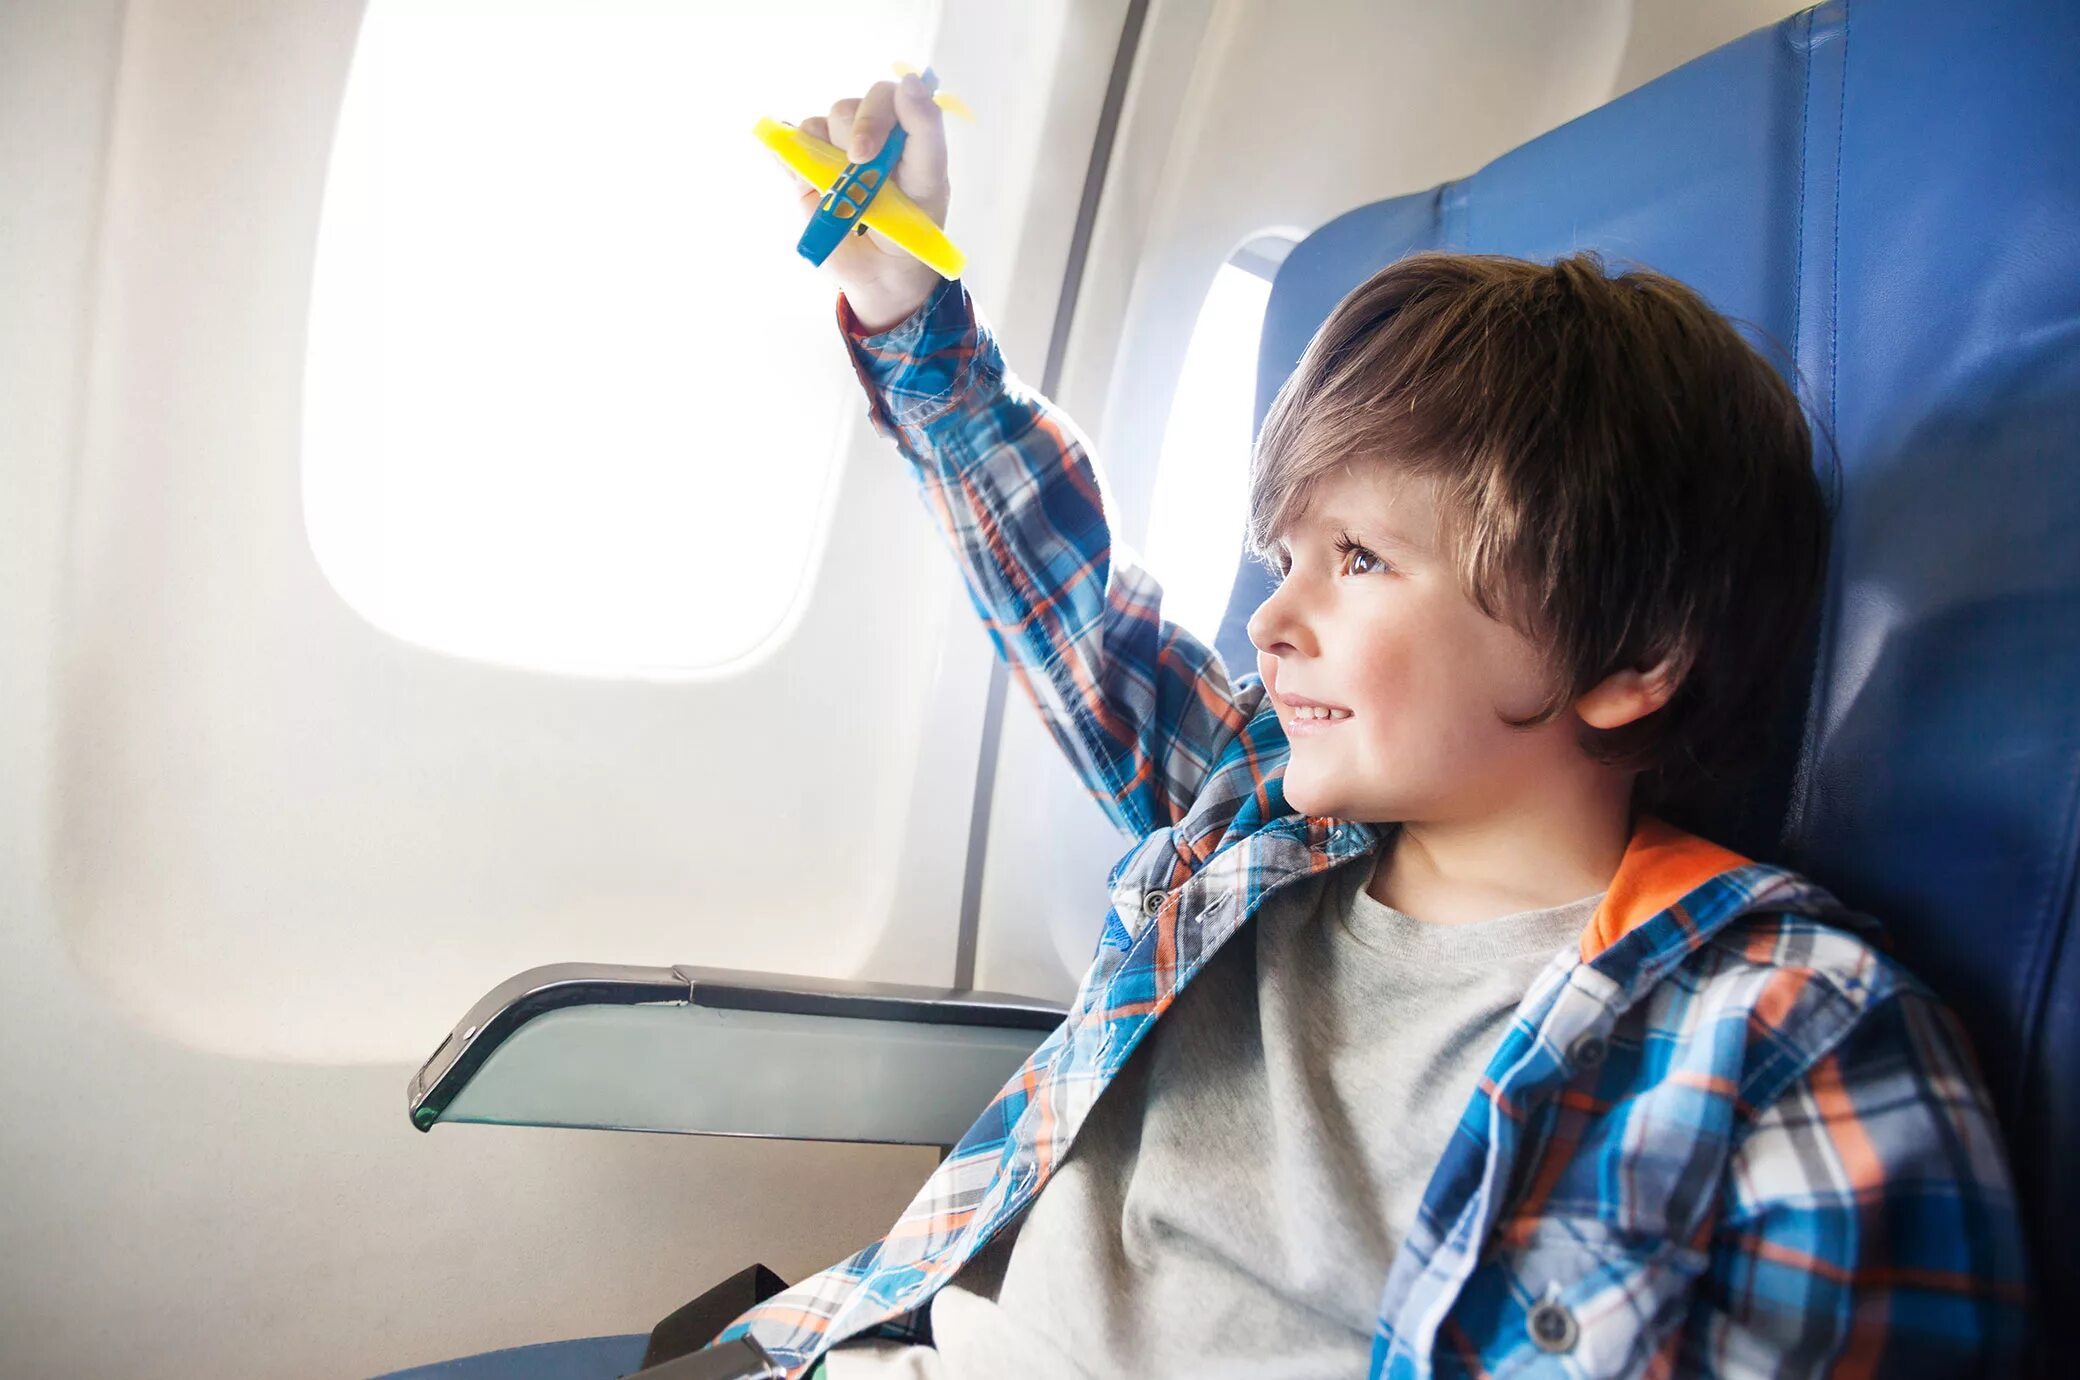 Самолет для детей. Для мальчиков самолёты. Путешествие на самолете. Путешествие с детьми. Kids travel